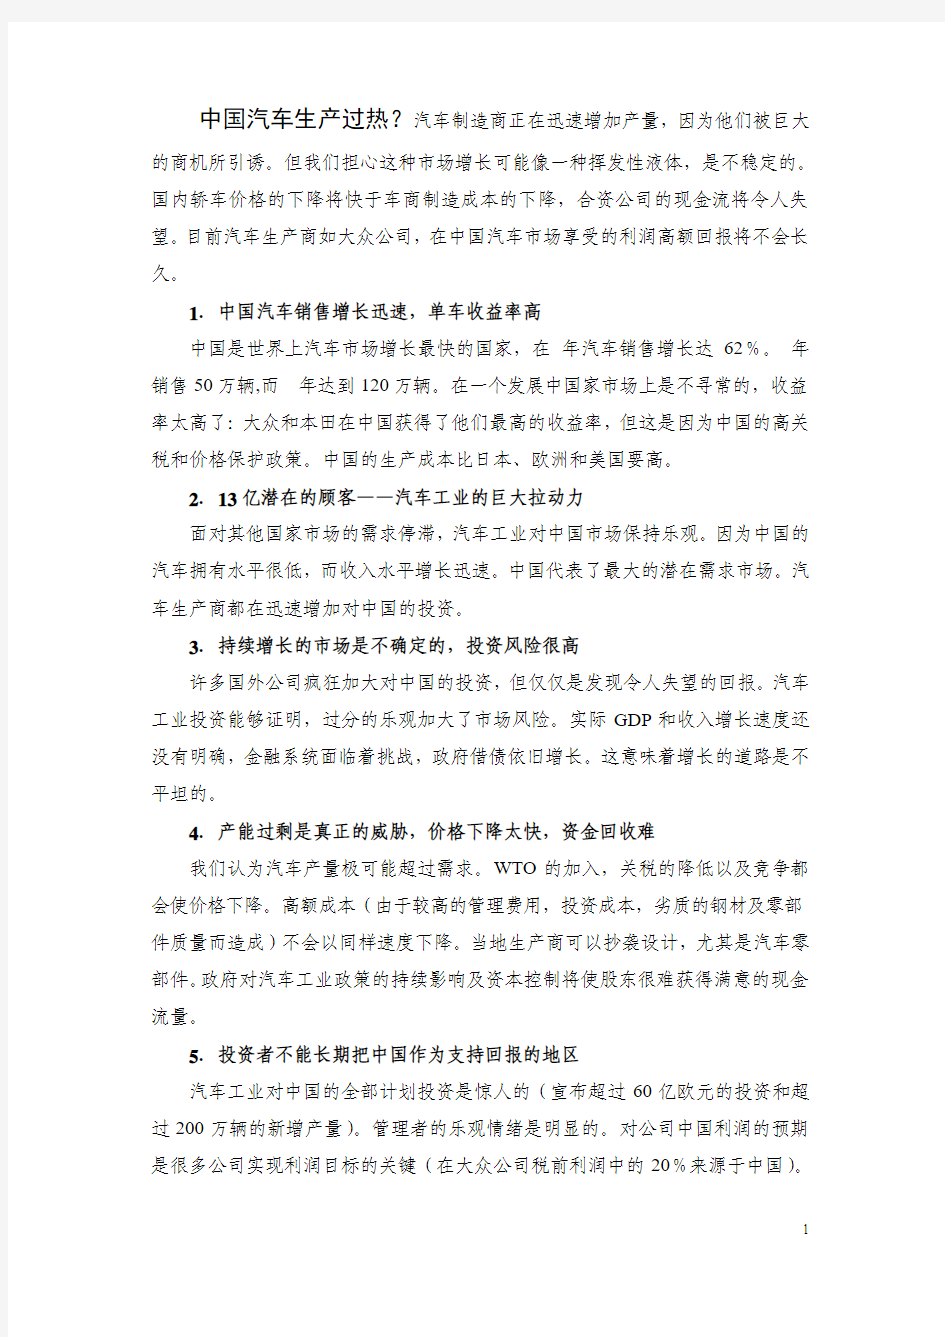 跨国汽车公司在中国的运营报告  翻译稿